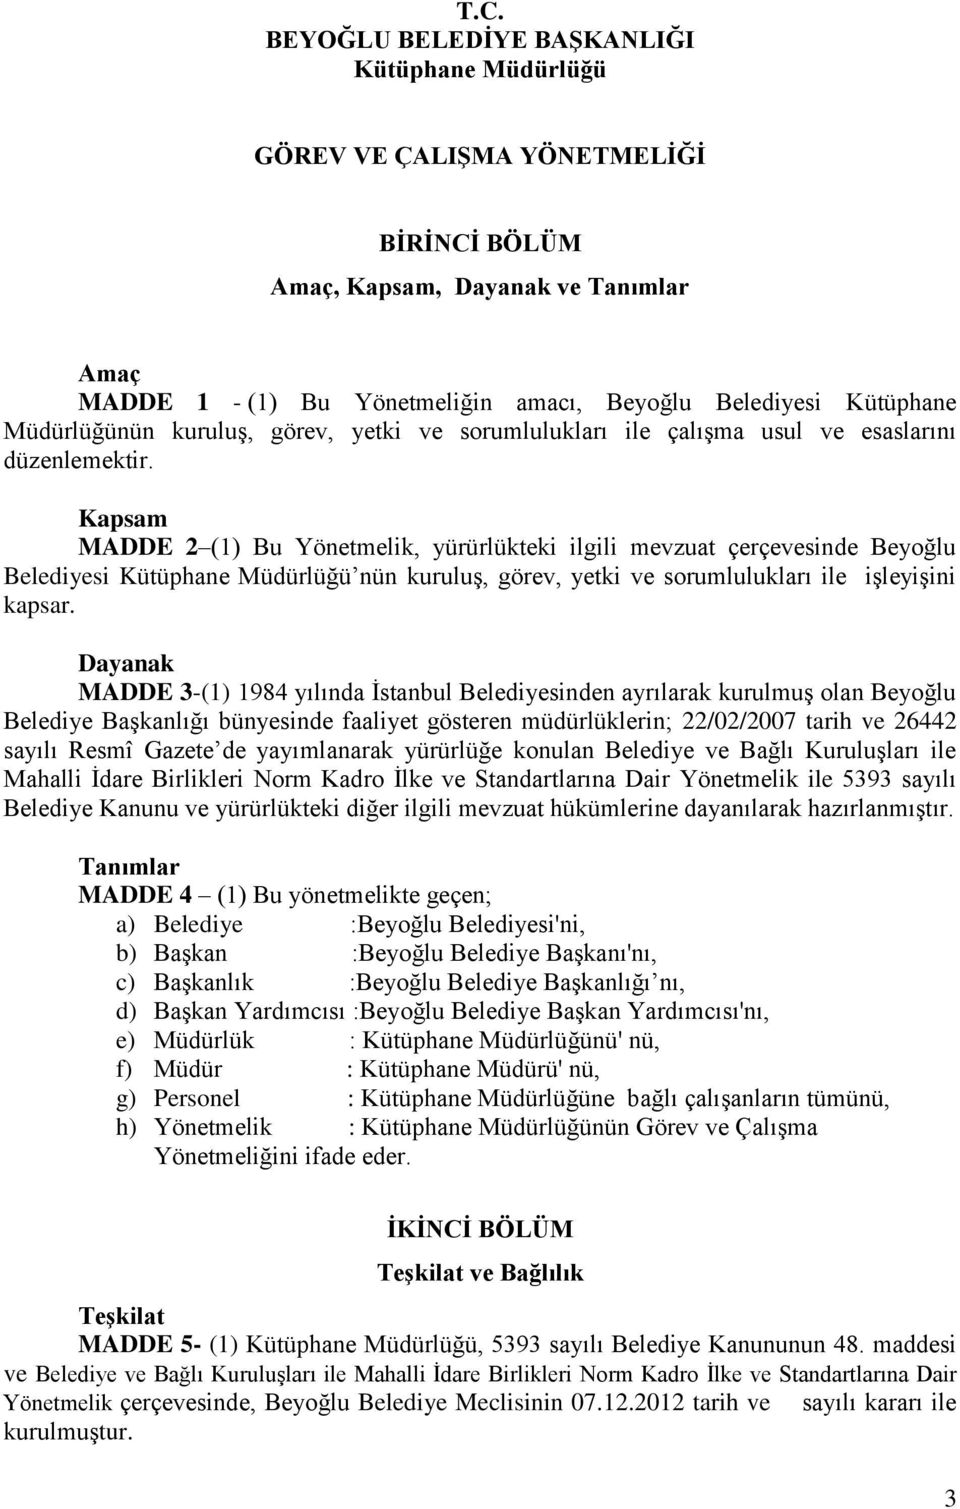 Kapsam MADDE 2 (1) Bu Yönetmelik, yürürlükteki ilgili mevzuat çerçevesinde Beyoğlu Belediyesi Kütüphane Müdürlüğü nün kuruluş, görev, yetki ve sorumlulukları ile işleyişini kapsar.